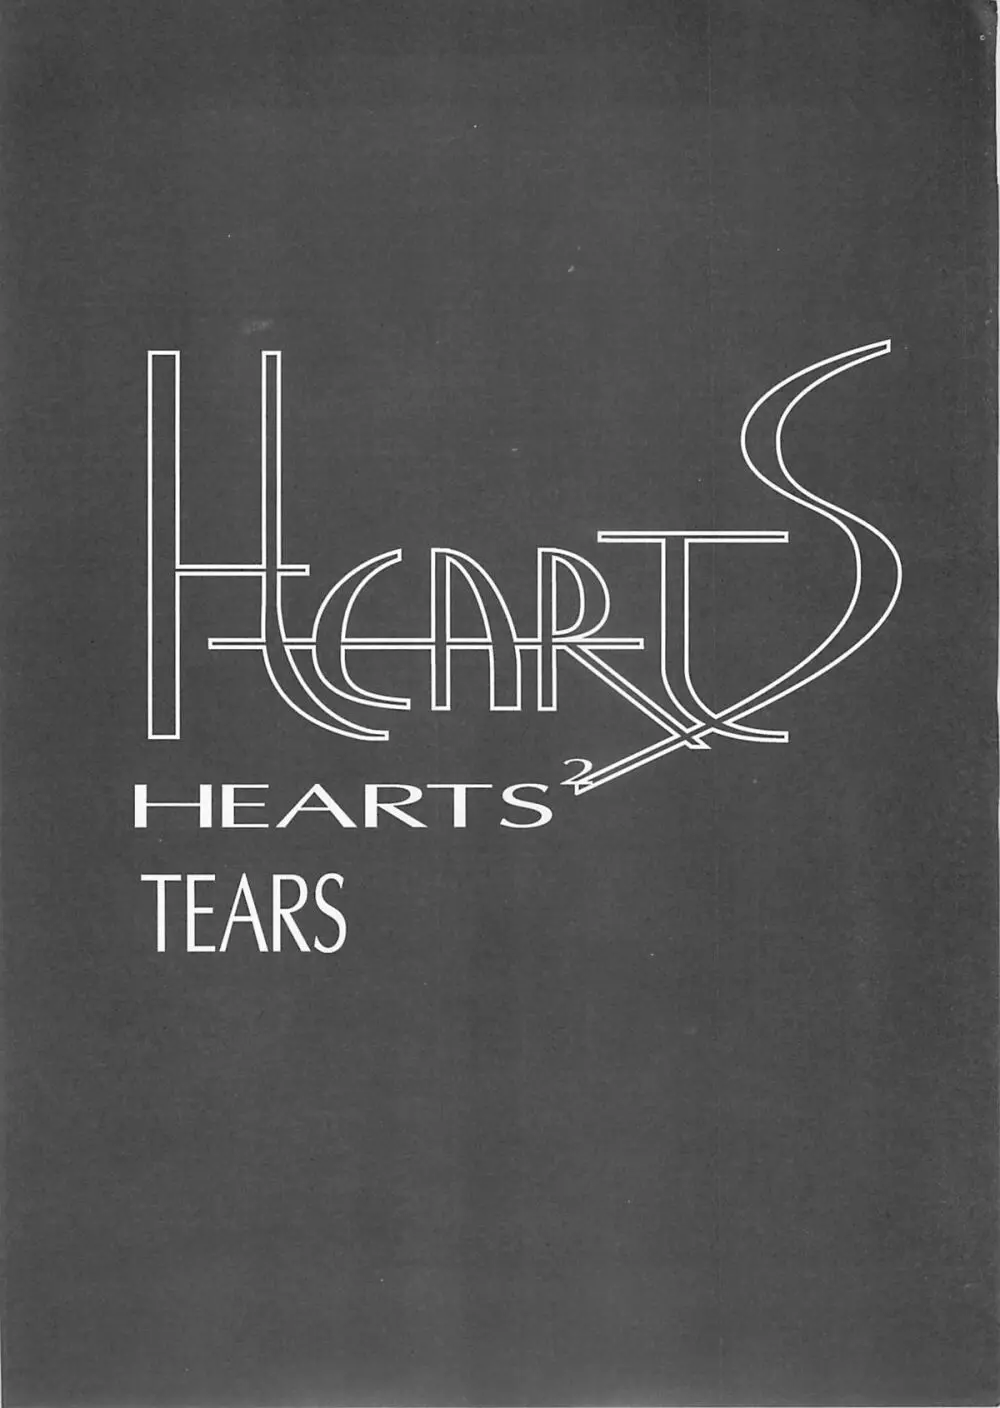 Ceramic Hearts 2 The Tin Tears 10ページ